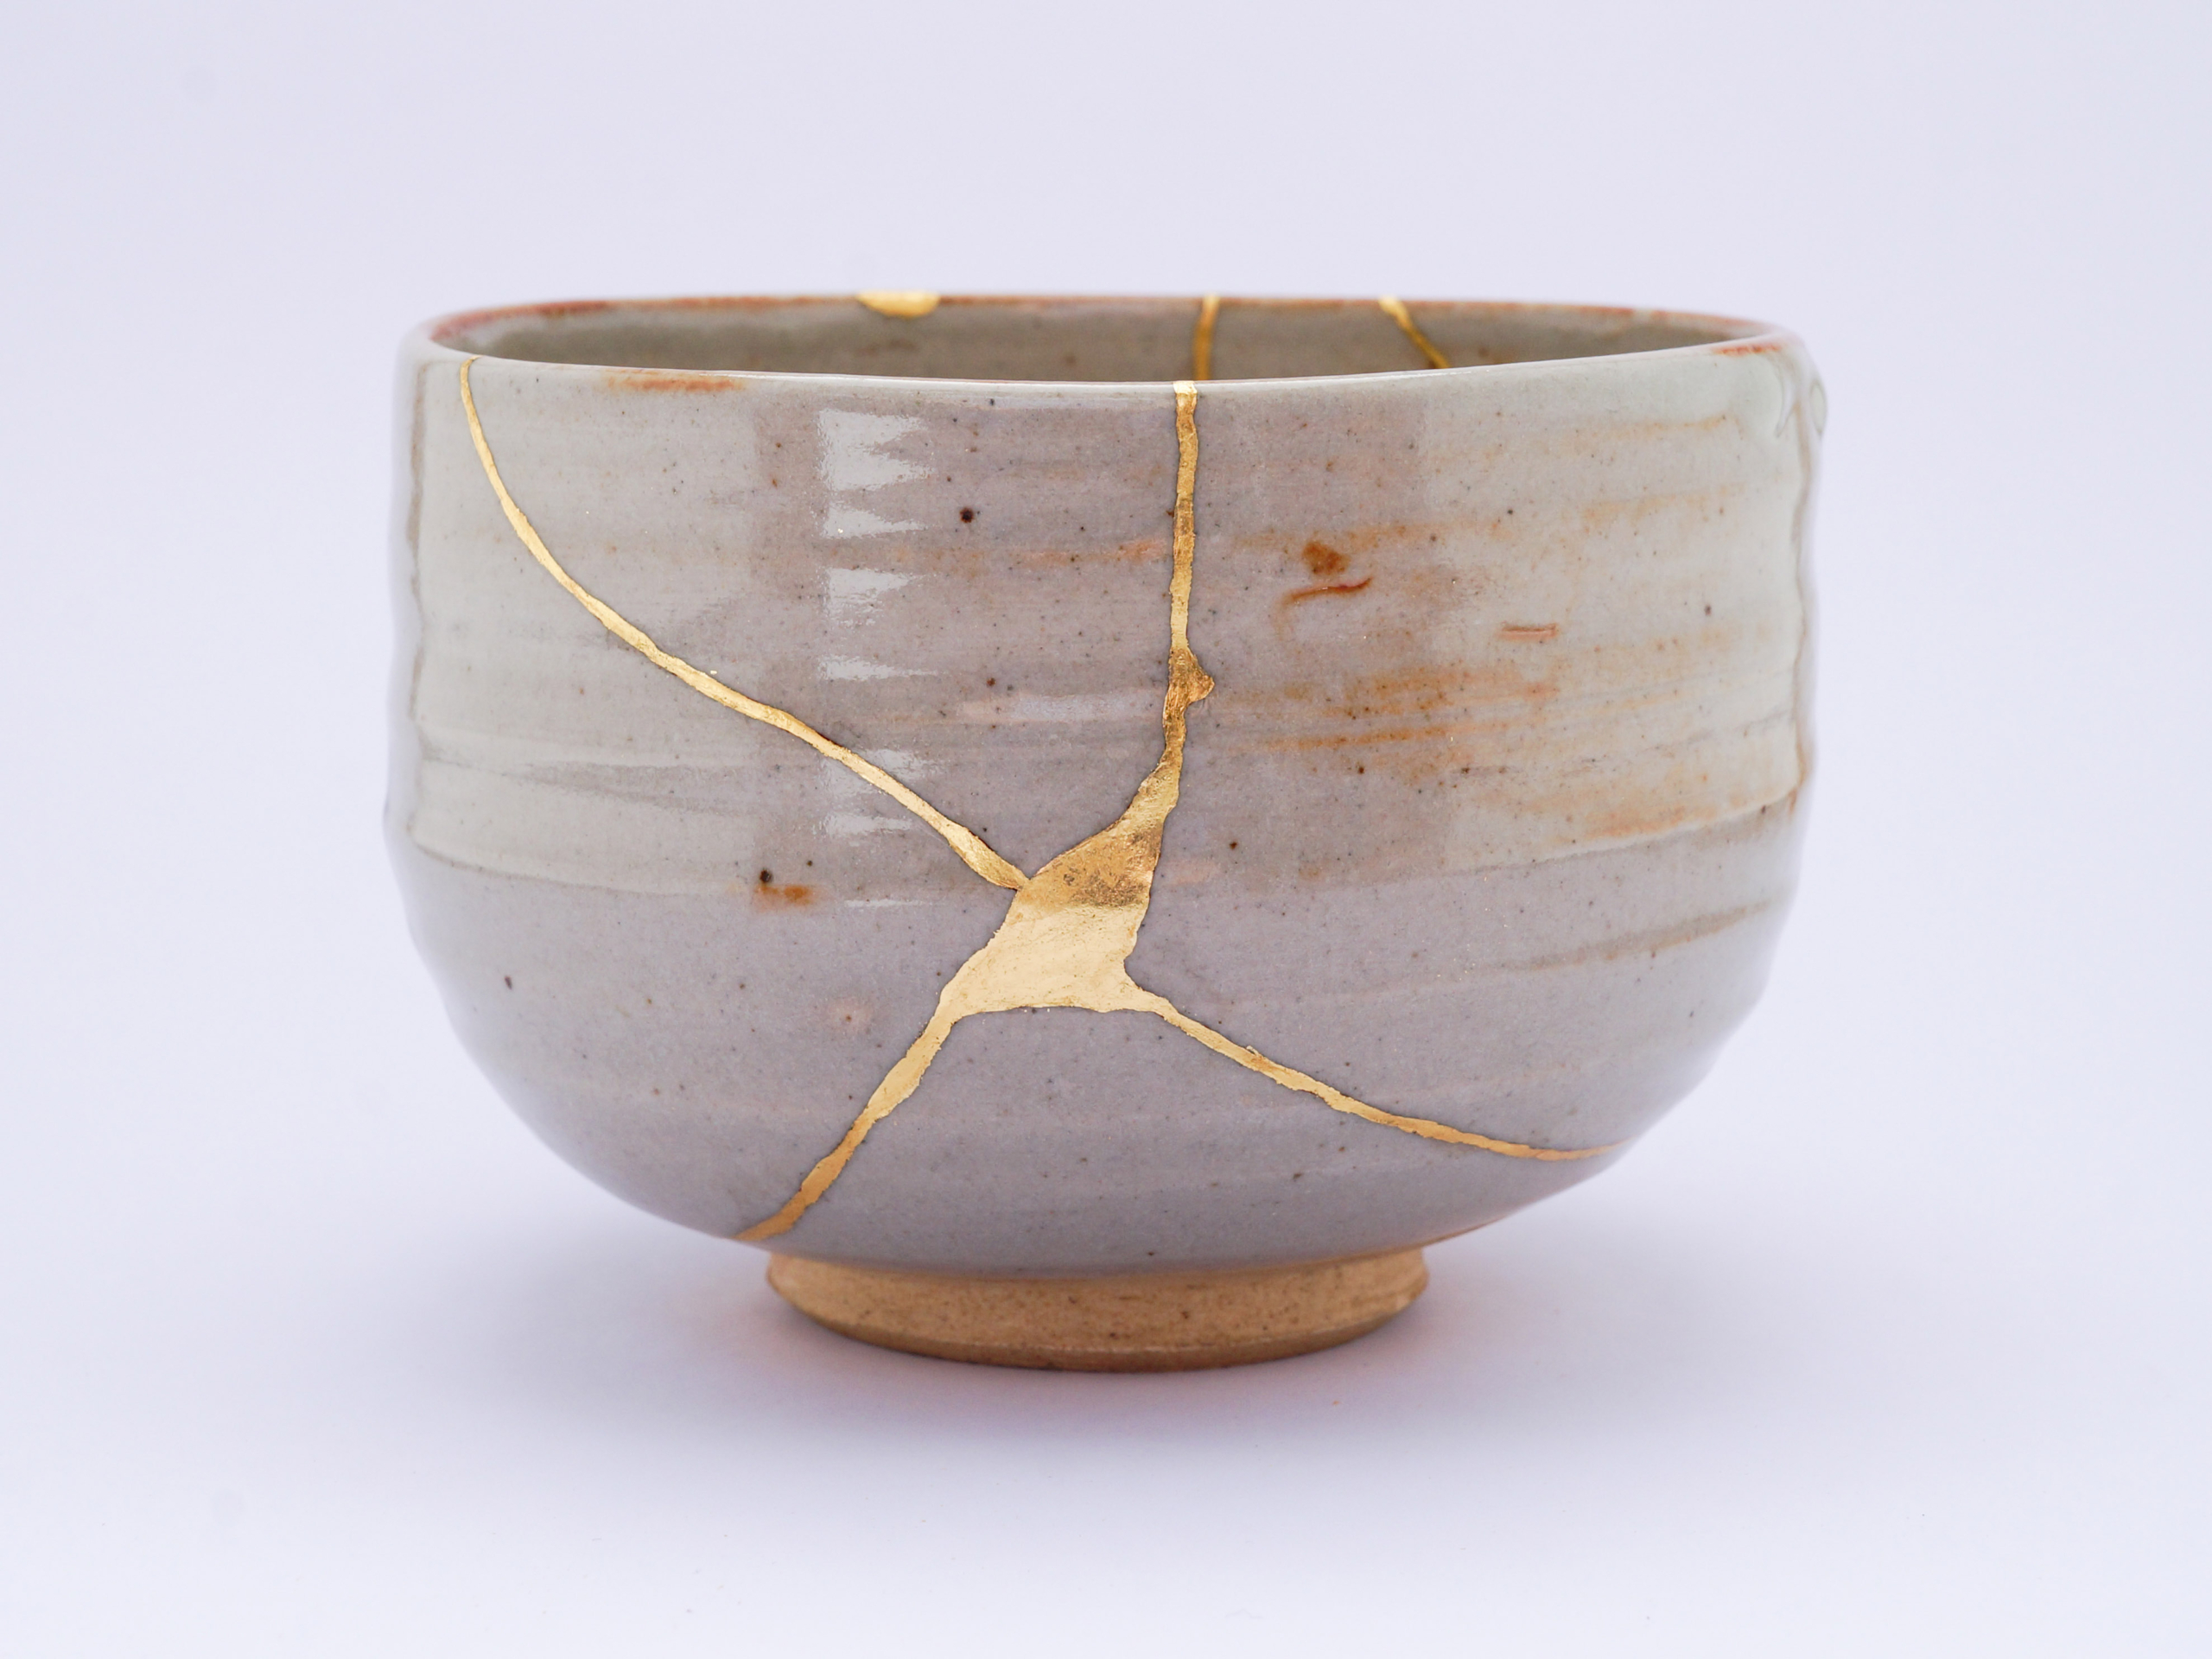 Những tạo tác gốm sứ đơn giản và mộc mạc trong văn hóa truyền thống Nhật Bản bắt nguồn từ phái Thiền Tông Phật giáo (Zen Buddhism), du nhập vào Nhật Bản trong thế kỷ 12. (Ảnh: Marco Montalti/Shutterstock)